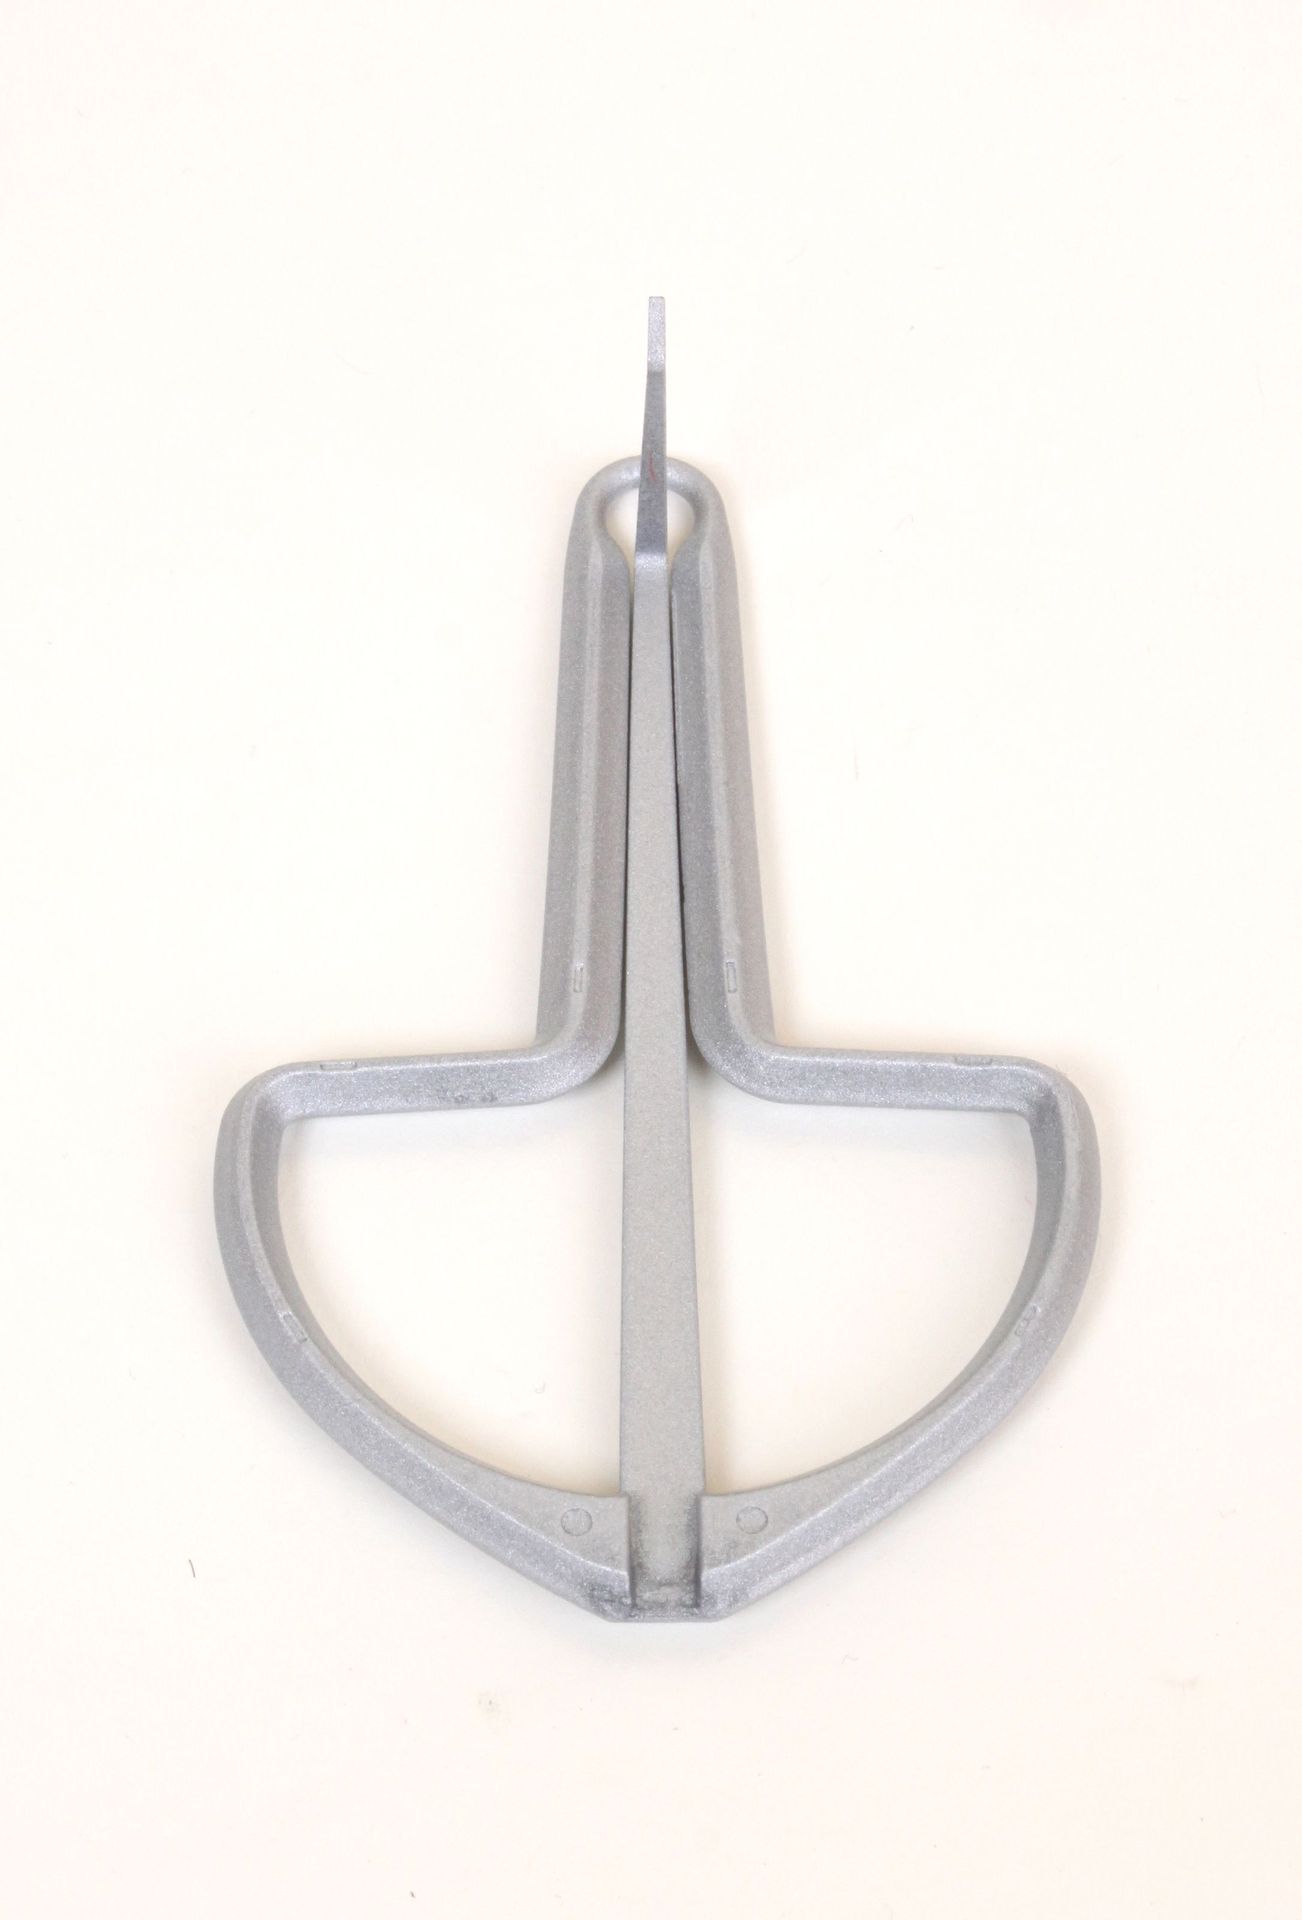 Migma Maultrommel klein ca. 73 x 45 mm Metall, grau silberfarbig  - Onlineshop Musikhaus Markstein